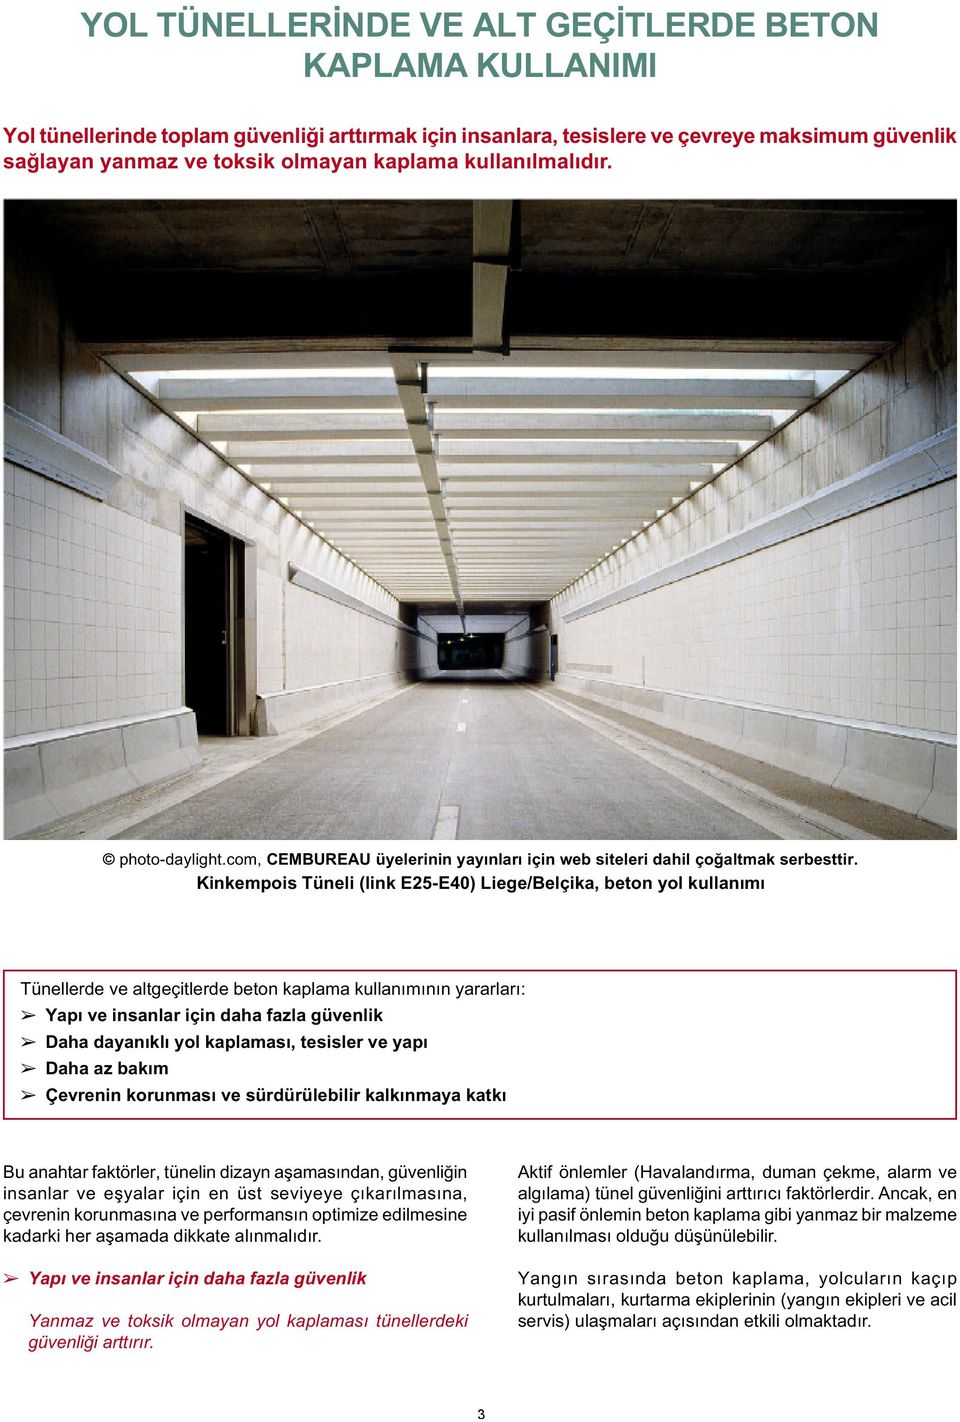 Kinkempois Tüneli (link E25-E40) Liege/Belçika, beton yol kullanımı Tünellerde ve altgeçitlerde beton kaplama kullanımının yararları: Yapı ve insanlar için daha fazla güvenlik Daha dayanıklı yol